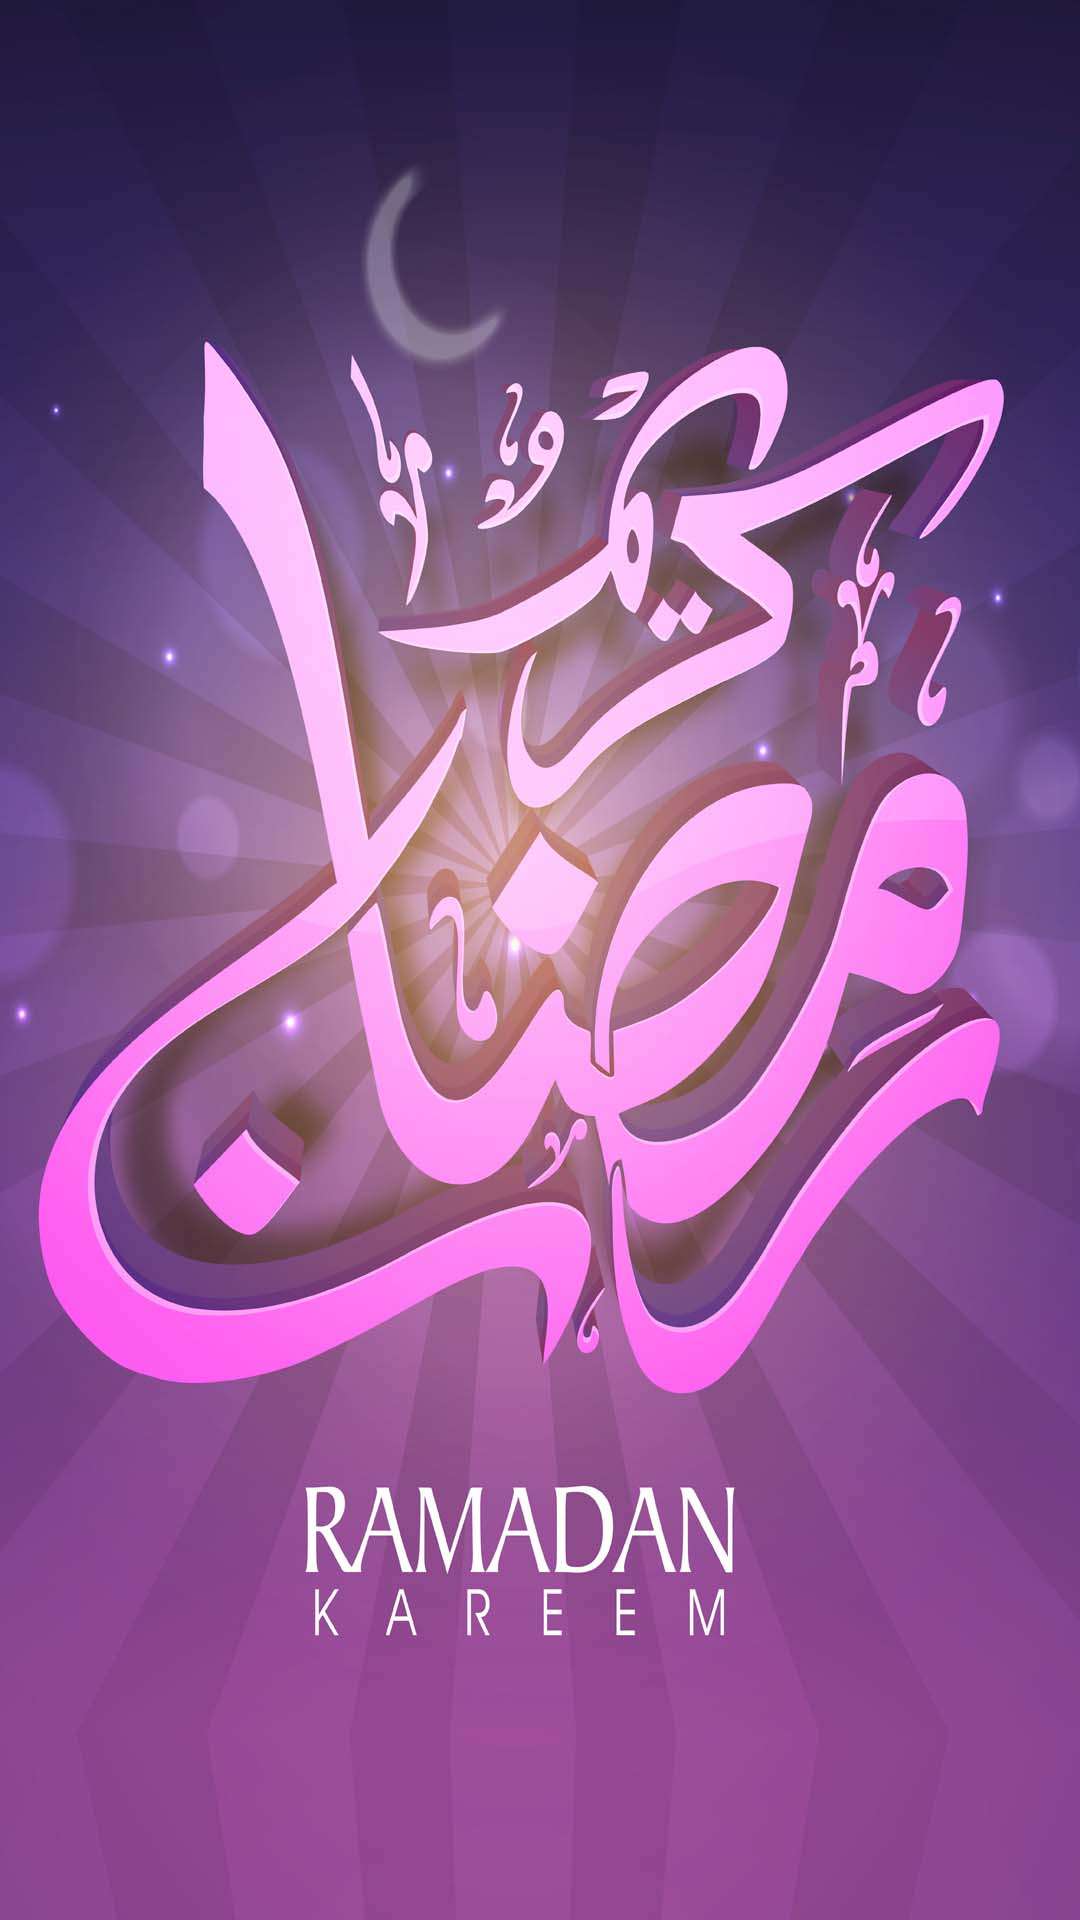 اجمل خلفيات الموبايل بمناسبه شهر رمضان 2020 HD-12